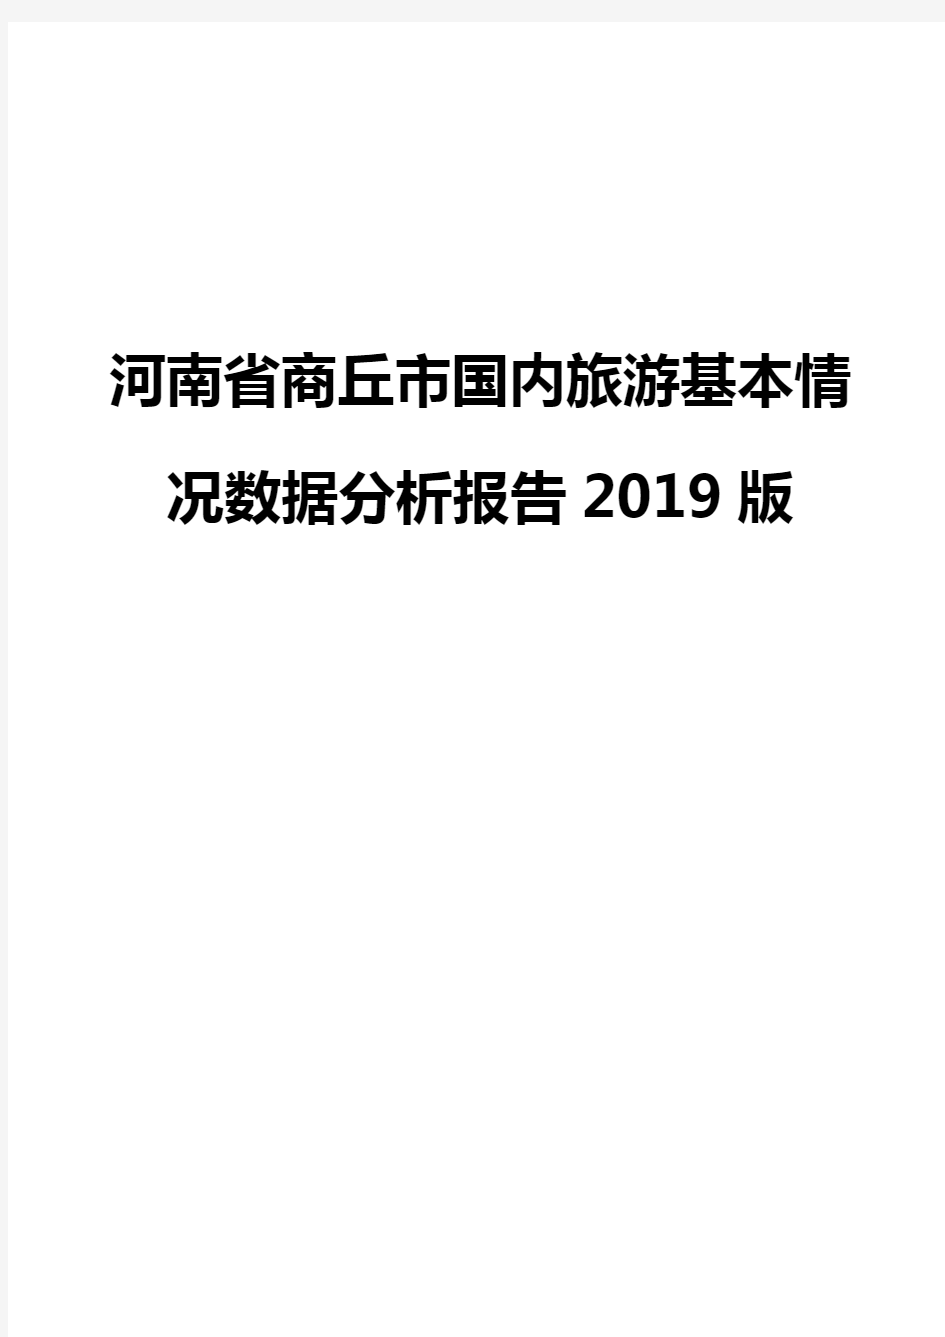 河南省商丘市国内旅游基本情况数据分析报告2019版